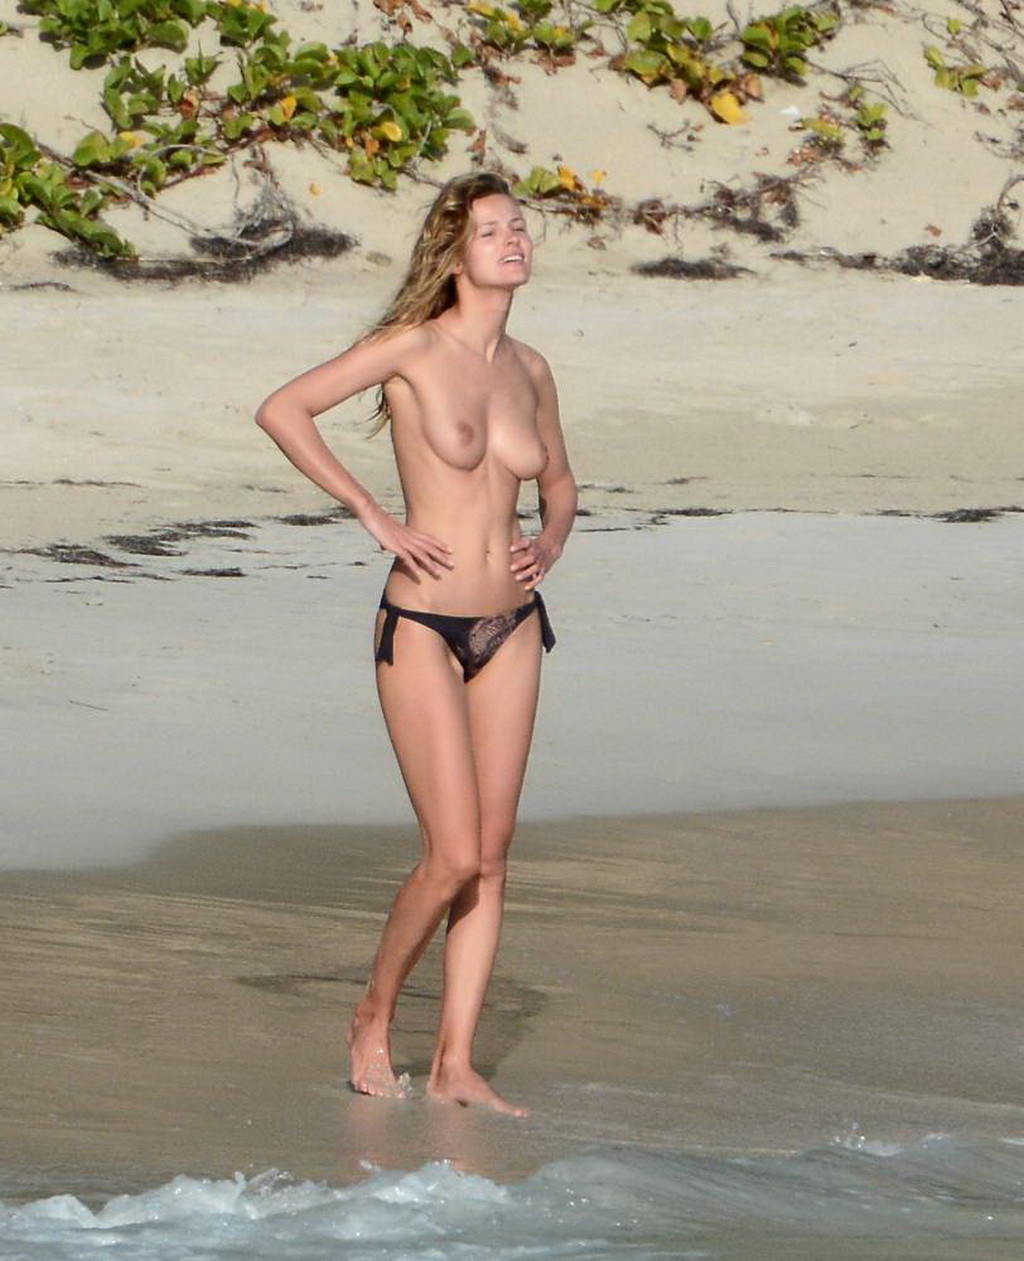 Edita vilkeviciute völlig nackt an einem Strand in Stbarts erwischt
 #75200000